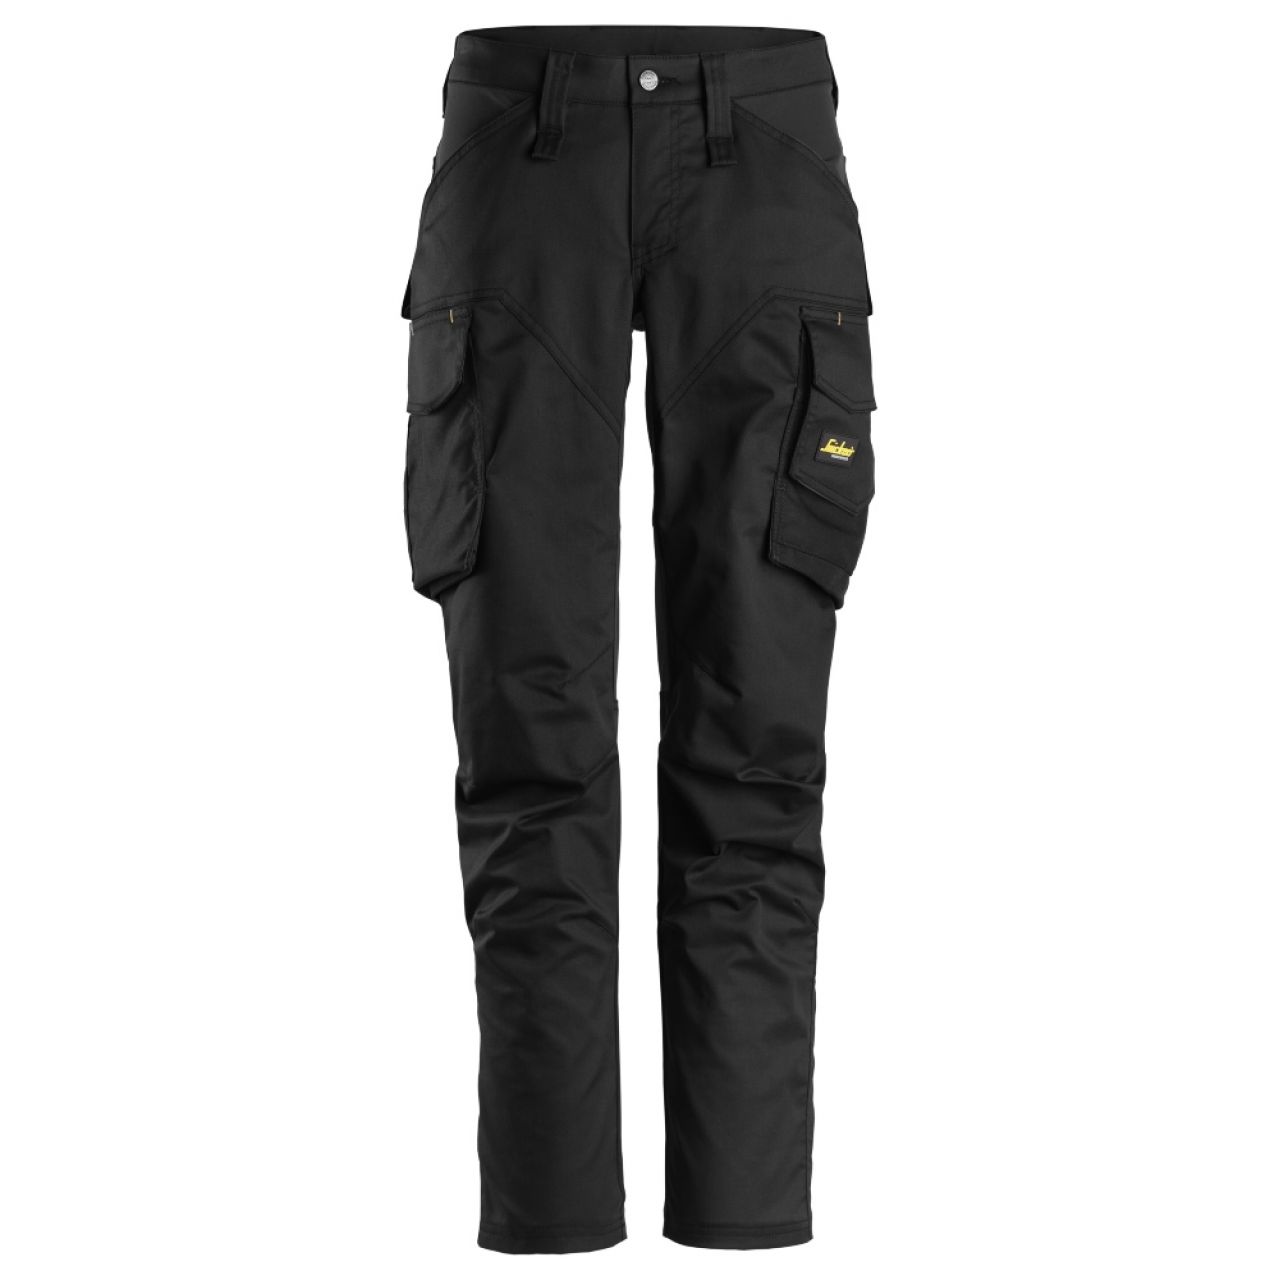 6703 Pantalones largos de trabajo elásticos para mujer con bolsillos para rodilleras AllroundWork negro talla 19